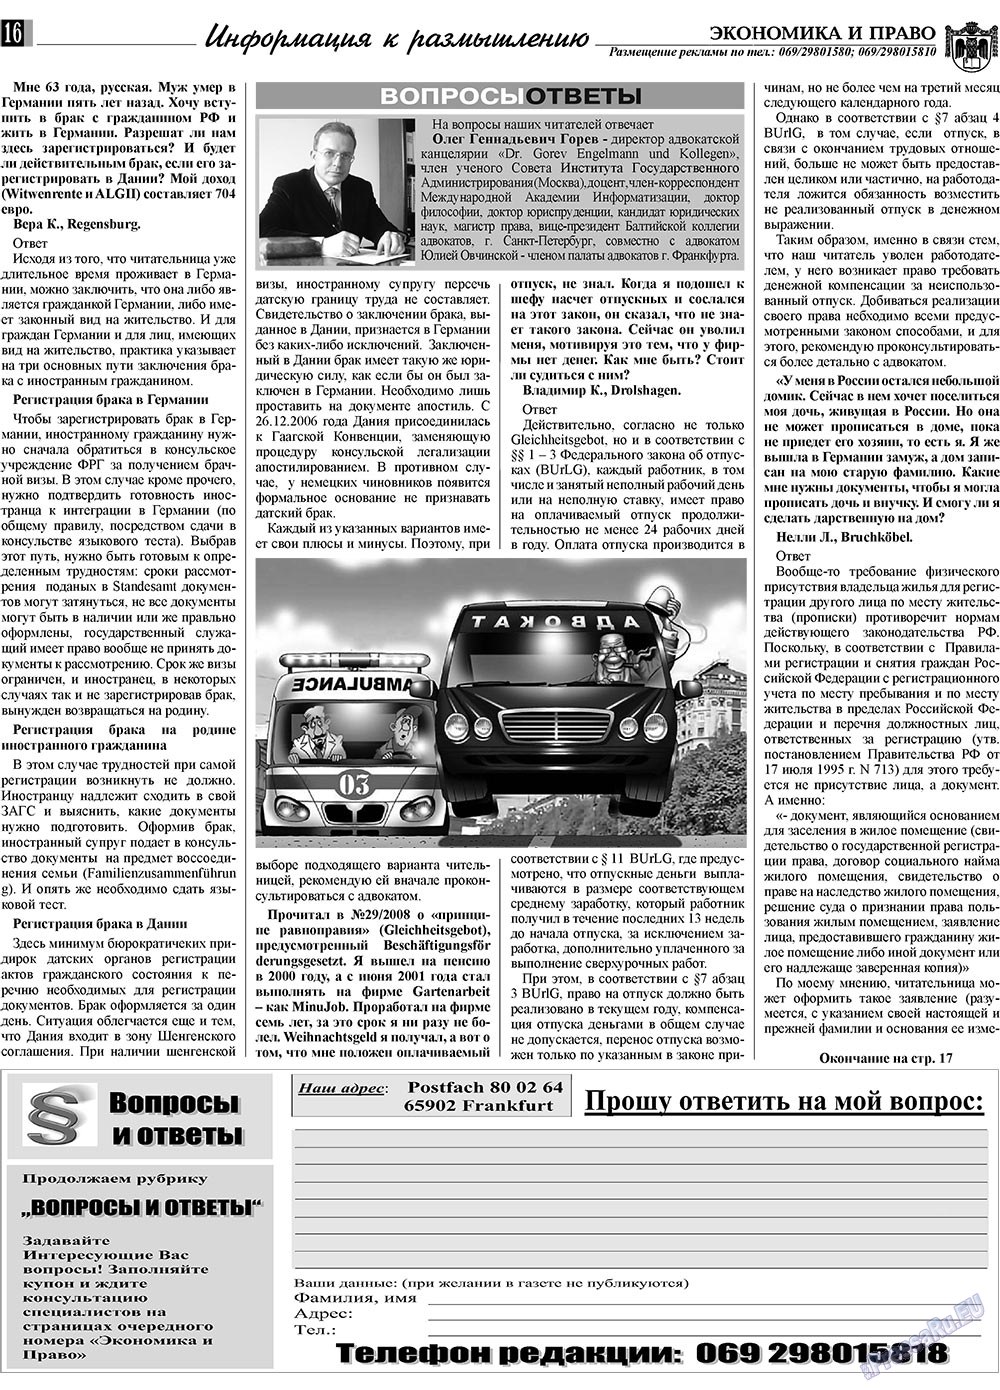 Экономика и право, газета. 2009 №1 стр.16